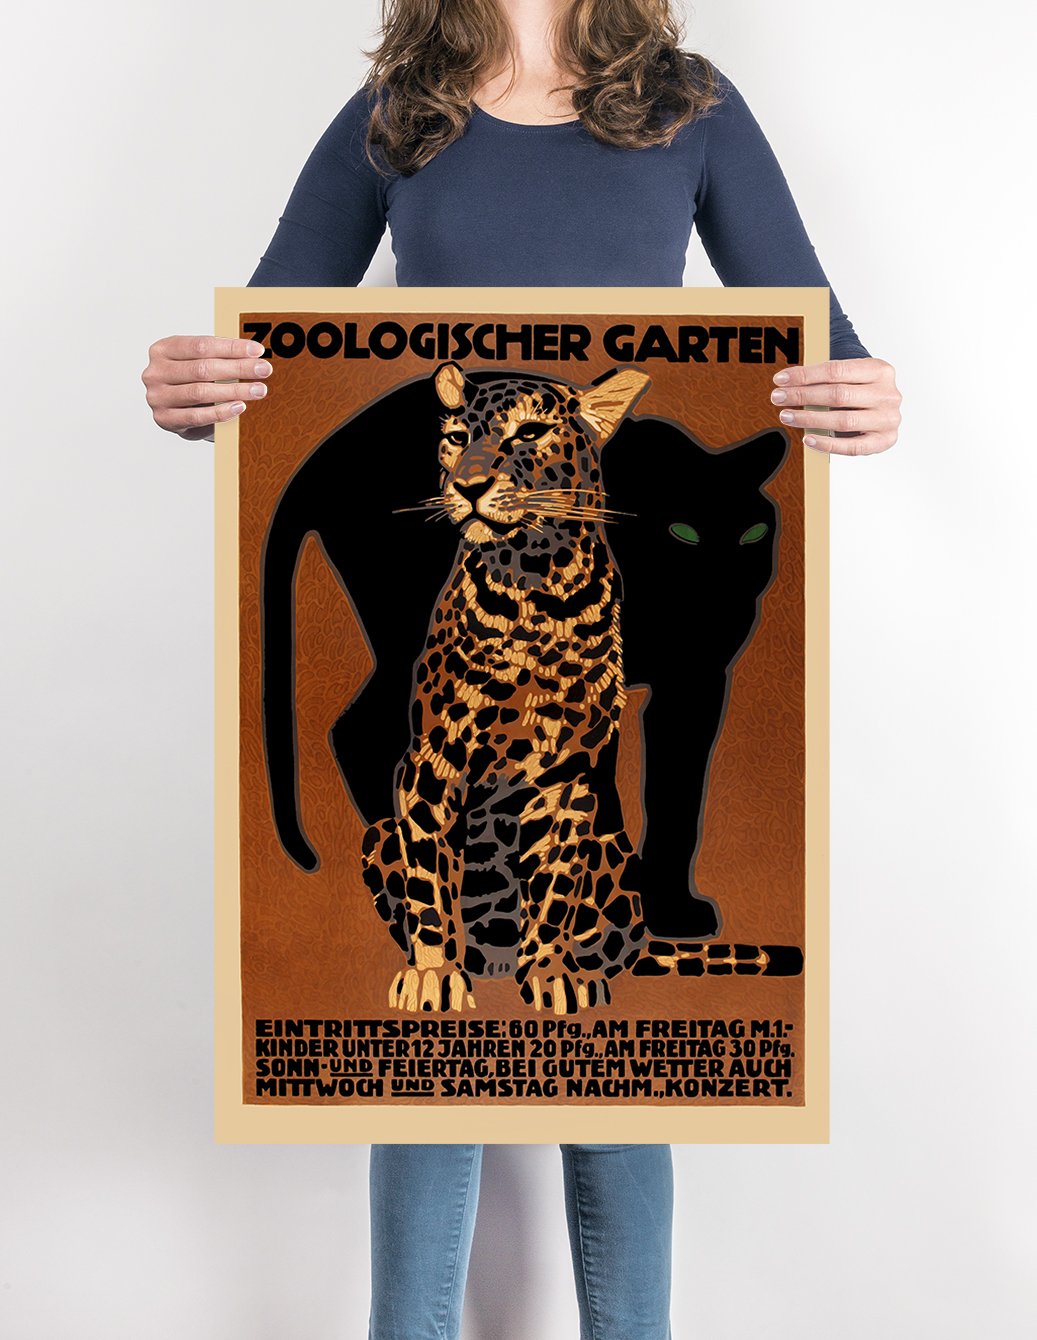 Zoologischer Garten Zoo Vintage Poster